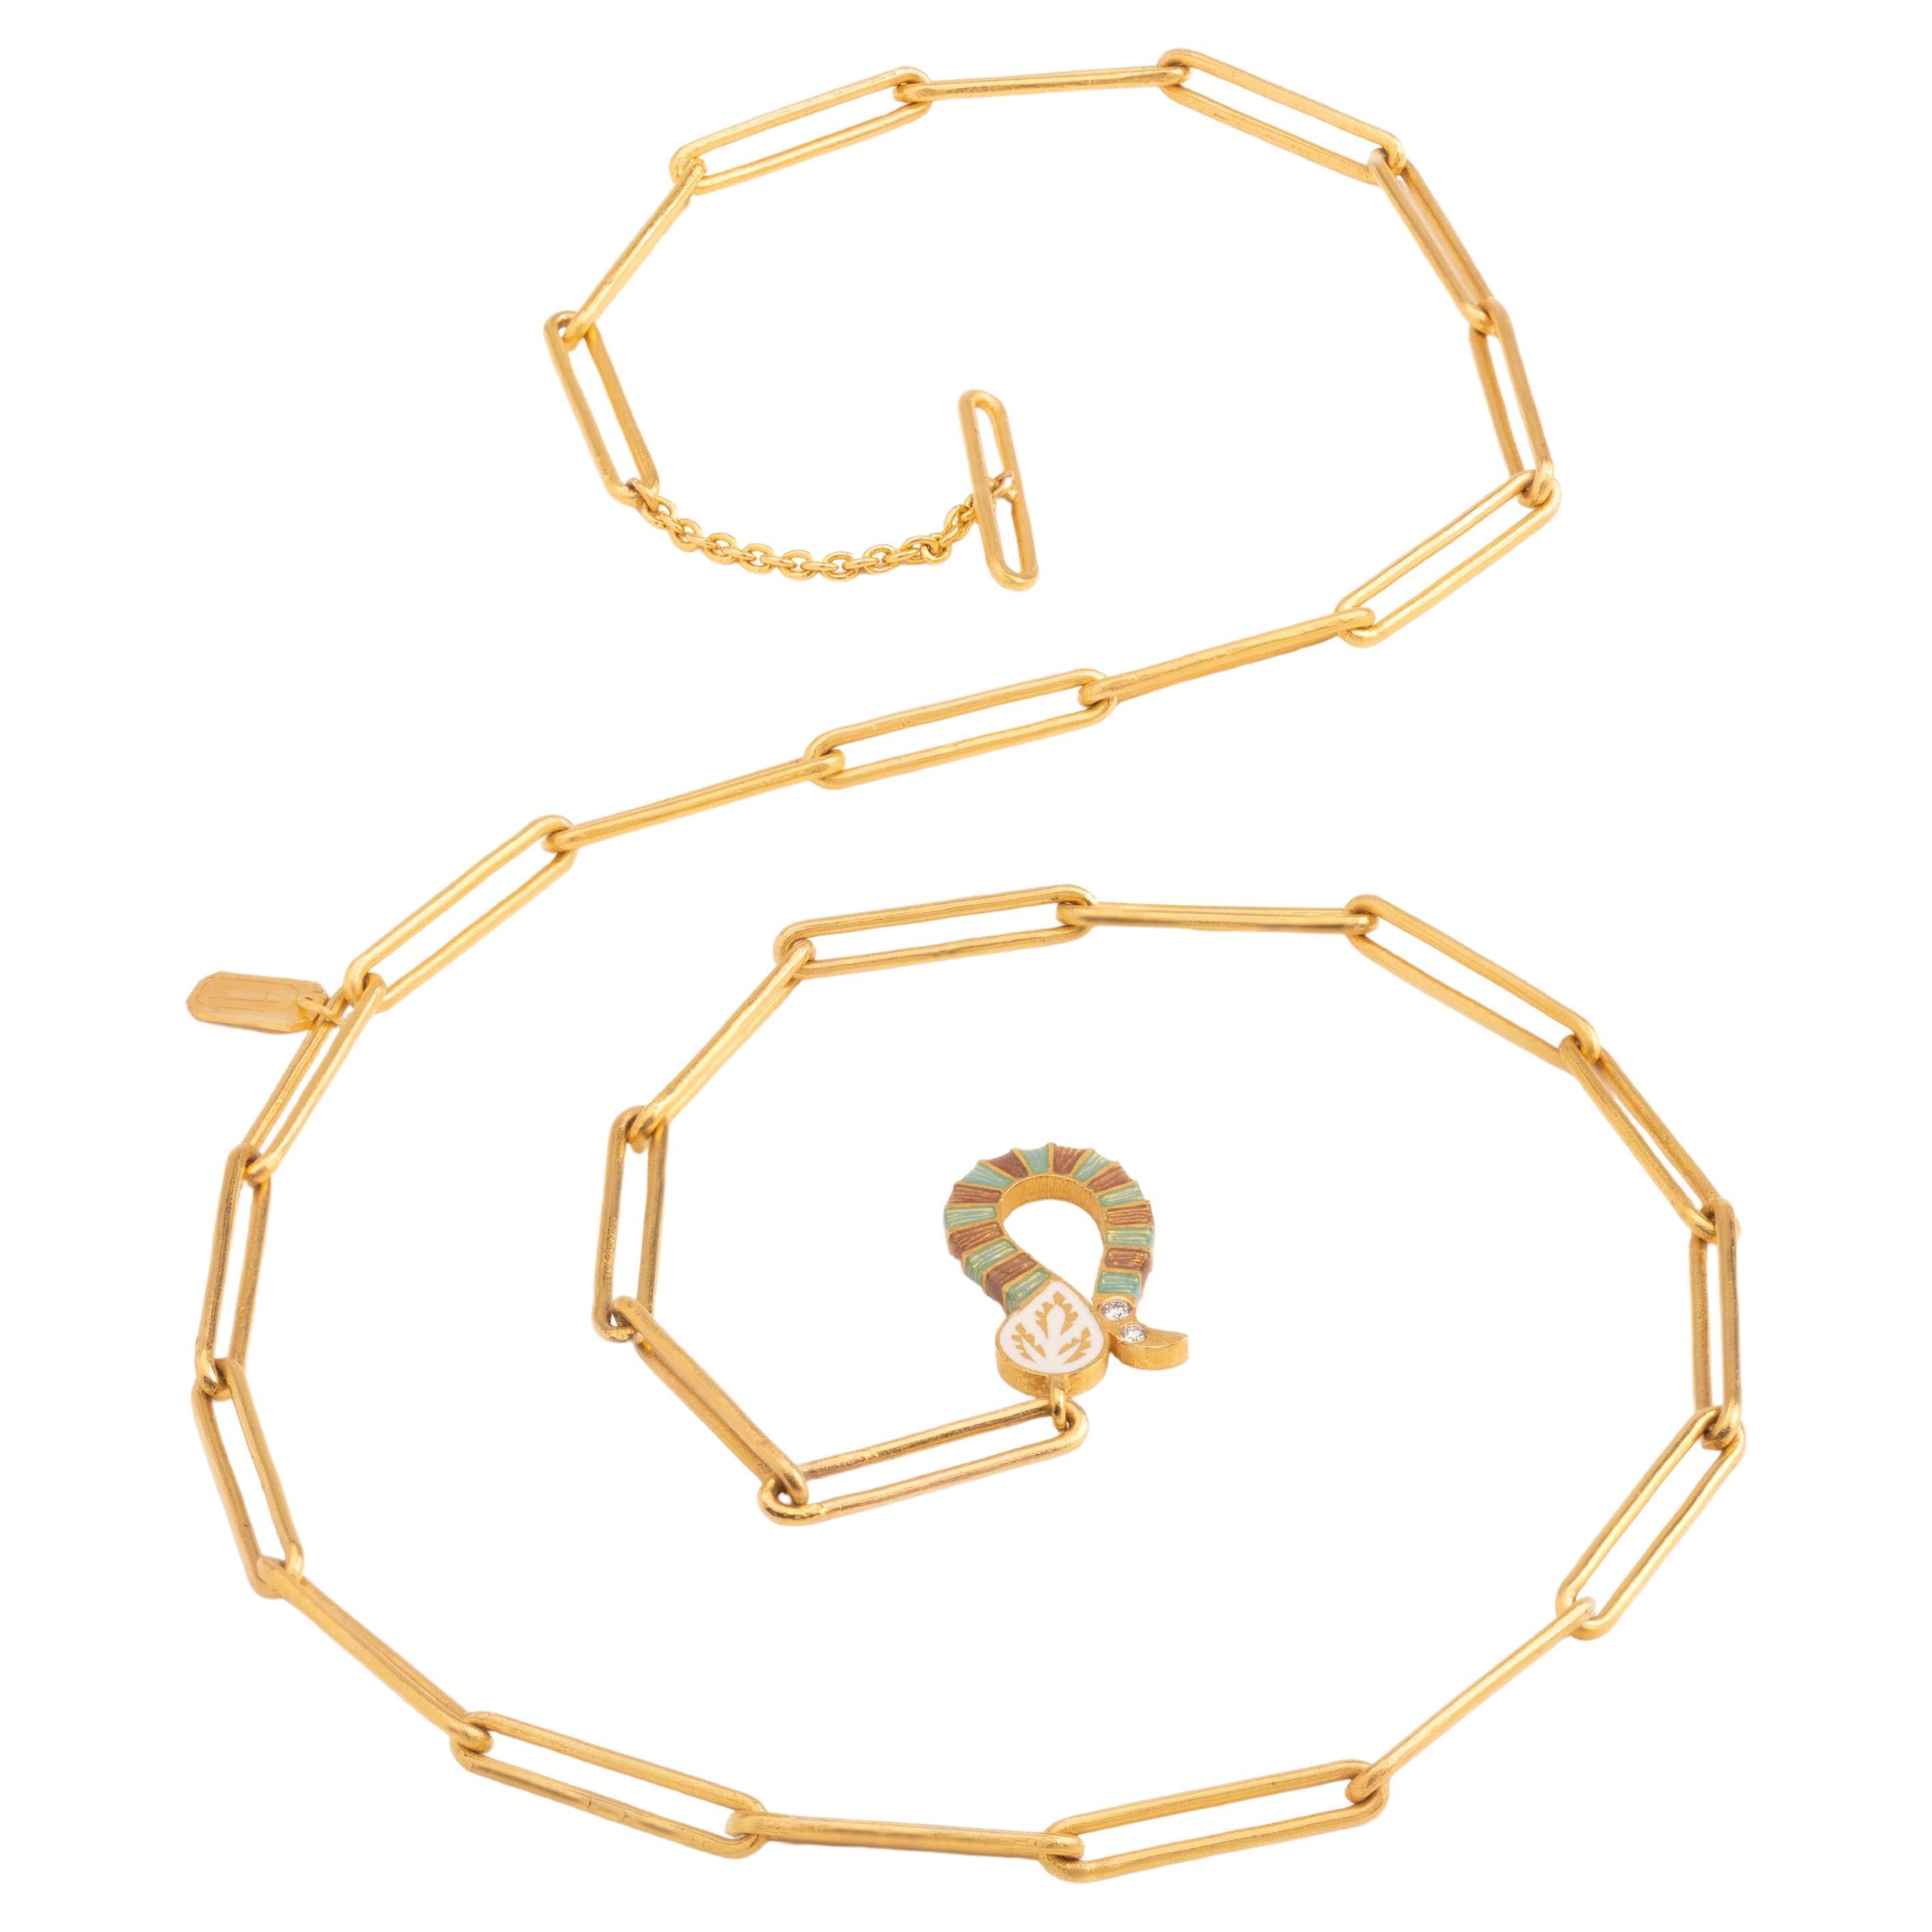 Collier chaîne Paperclip en or 22 carats et émail avec fermoir à bascule, fabriqué à la main par Agaro